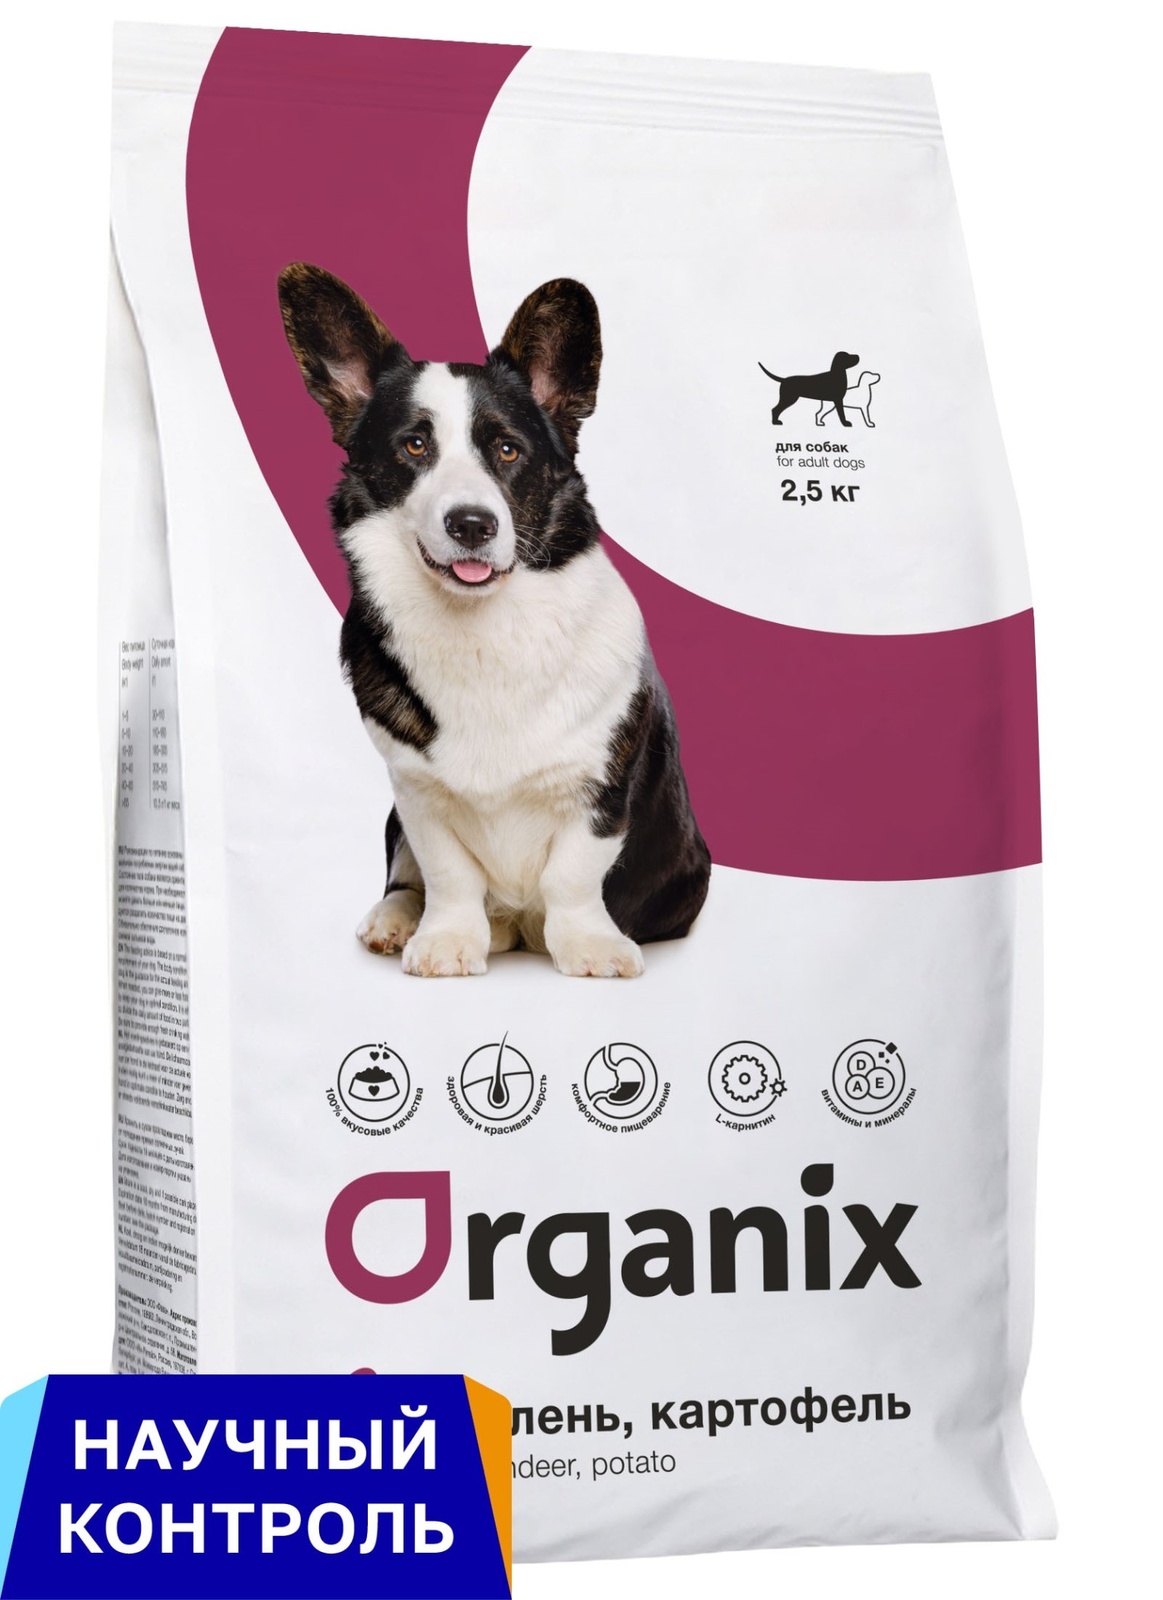 Organix Organix полнорационный сухой корм для взрослых собак всех пород с олениной и картофелем (18 кг) organix organix полнорационный сухой корм для взрослых собак всех пород с олениной и картофелем 18 кг